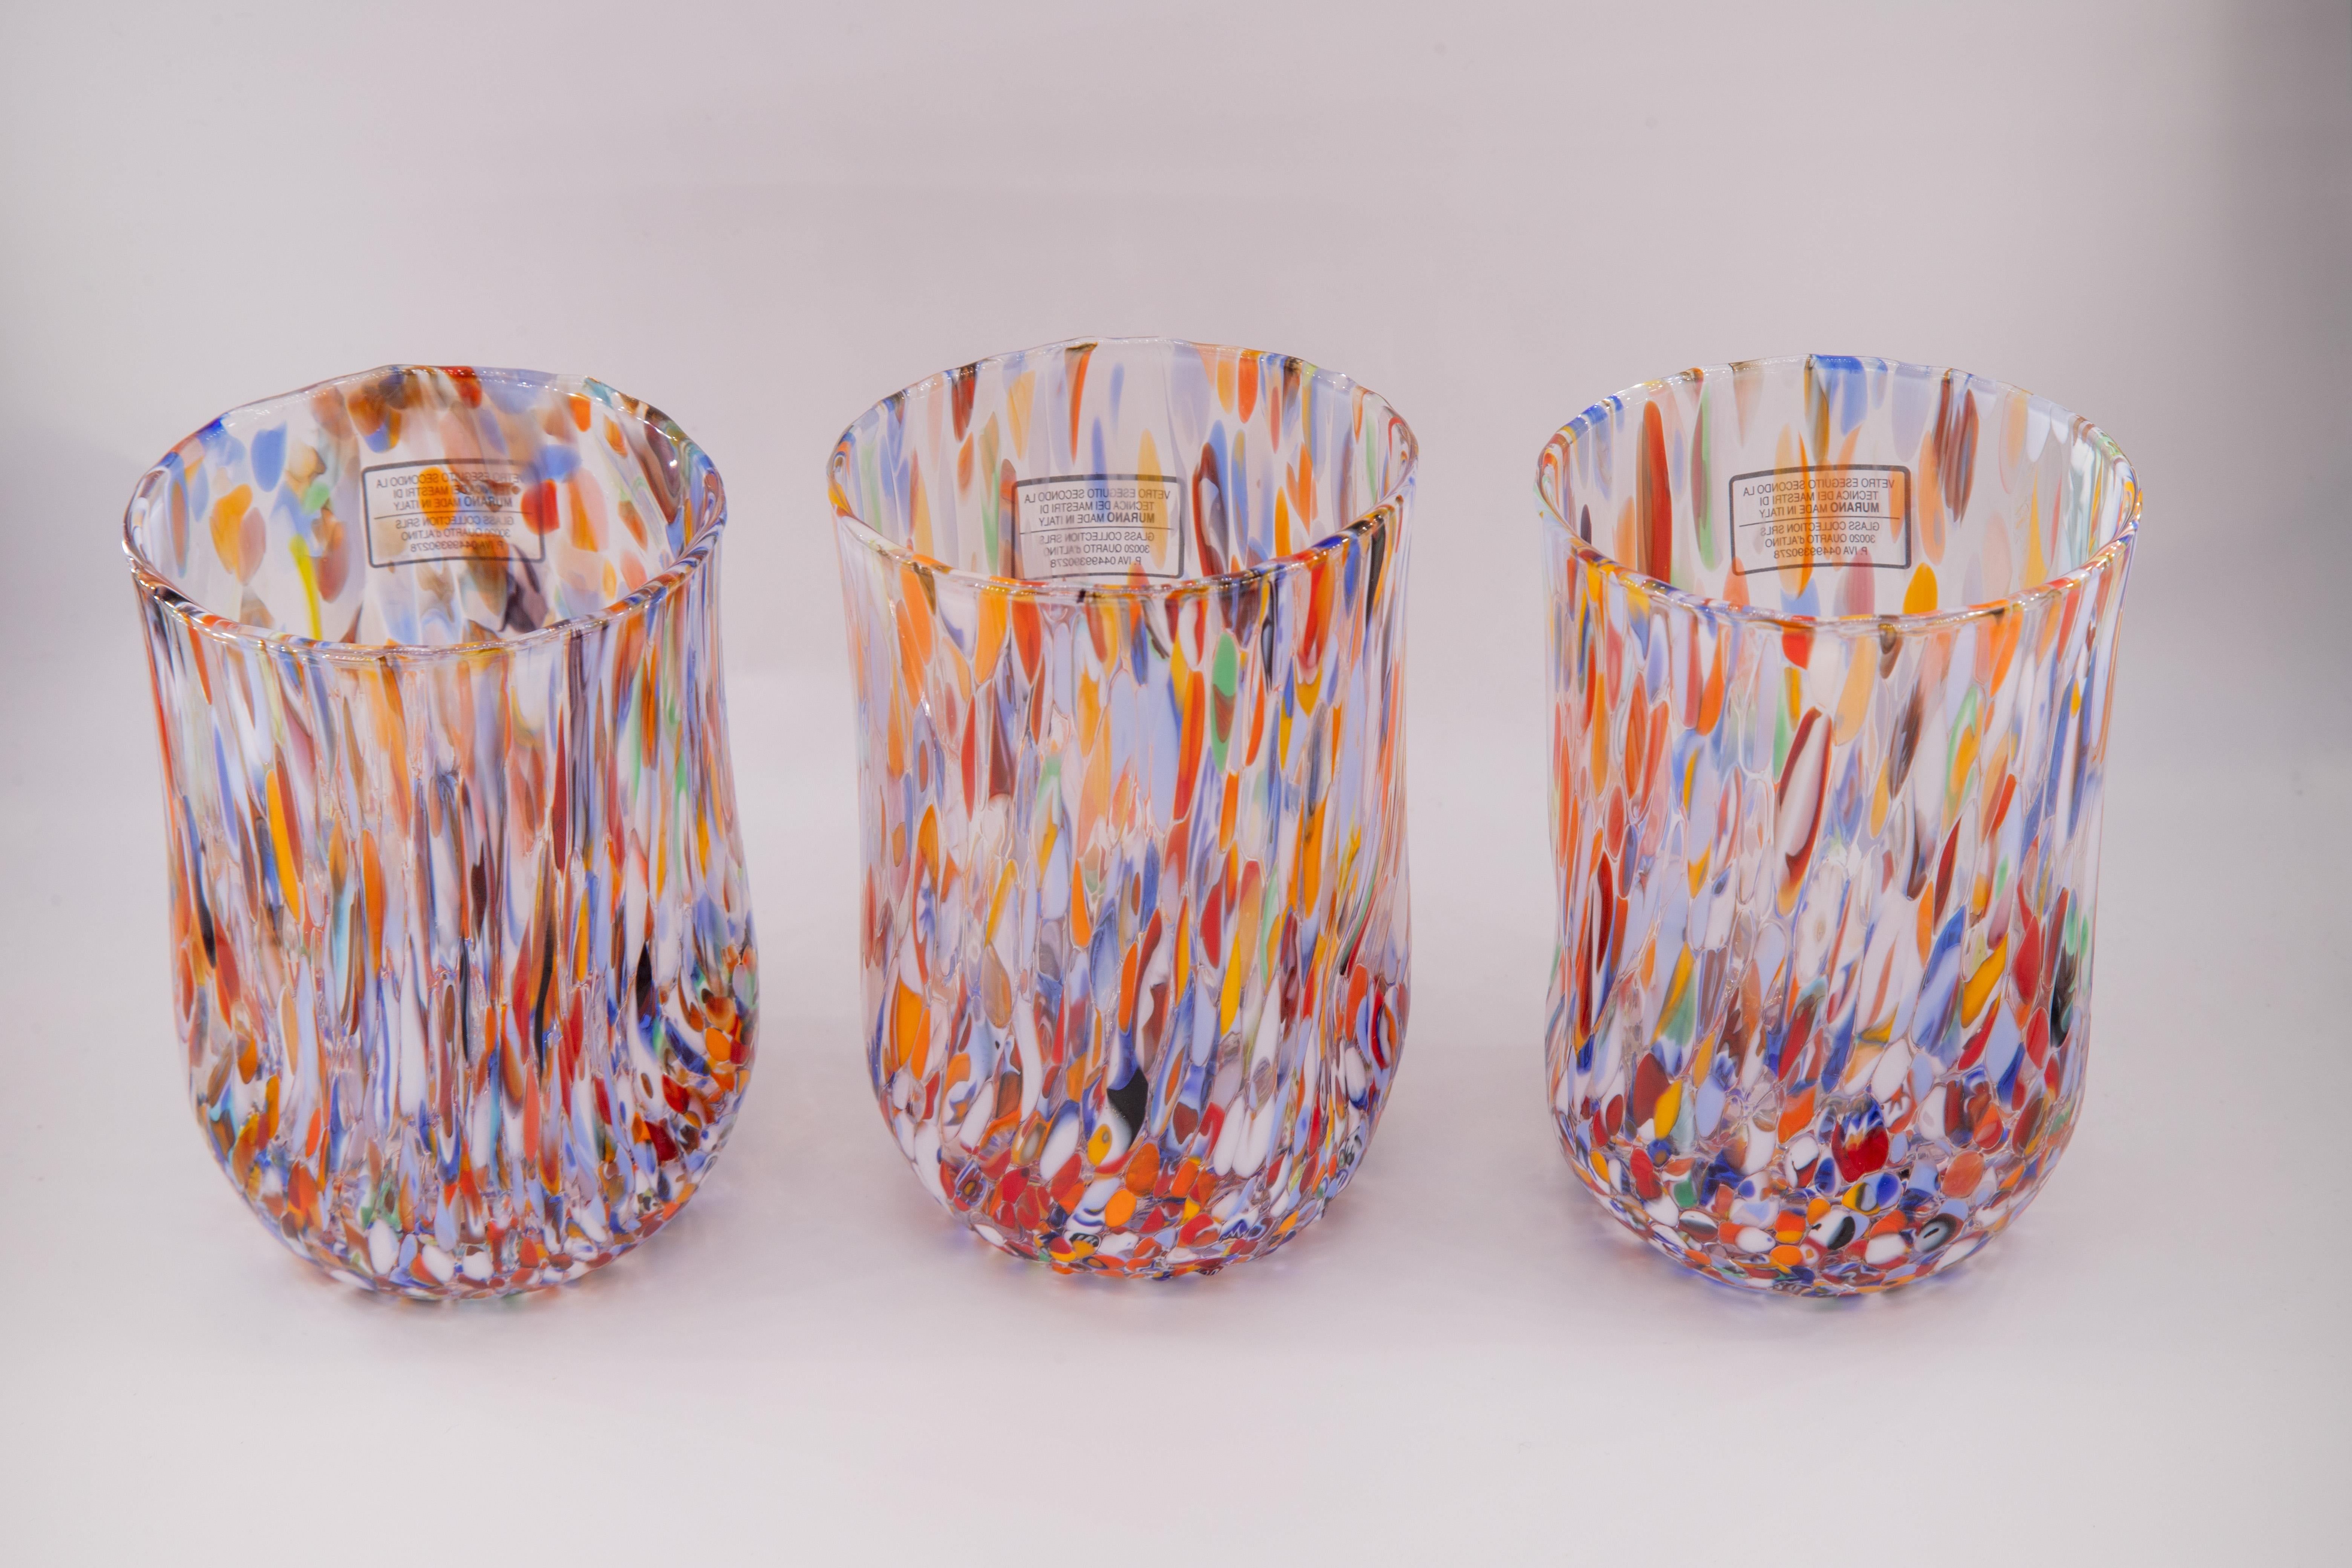 Set de six verres à eau/boisson/vin couleur Millefiori - Verre de Murano - Fabriqué en Italie.

Ces verres individuels de Murano sont inspirés du verre classique 